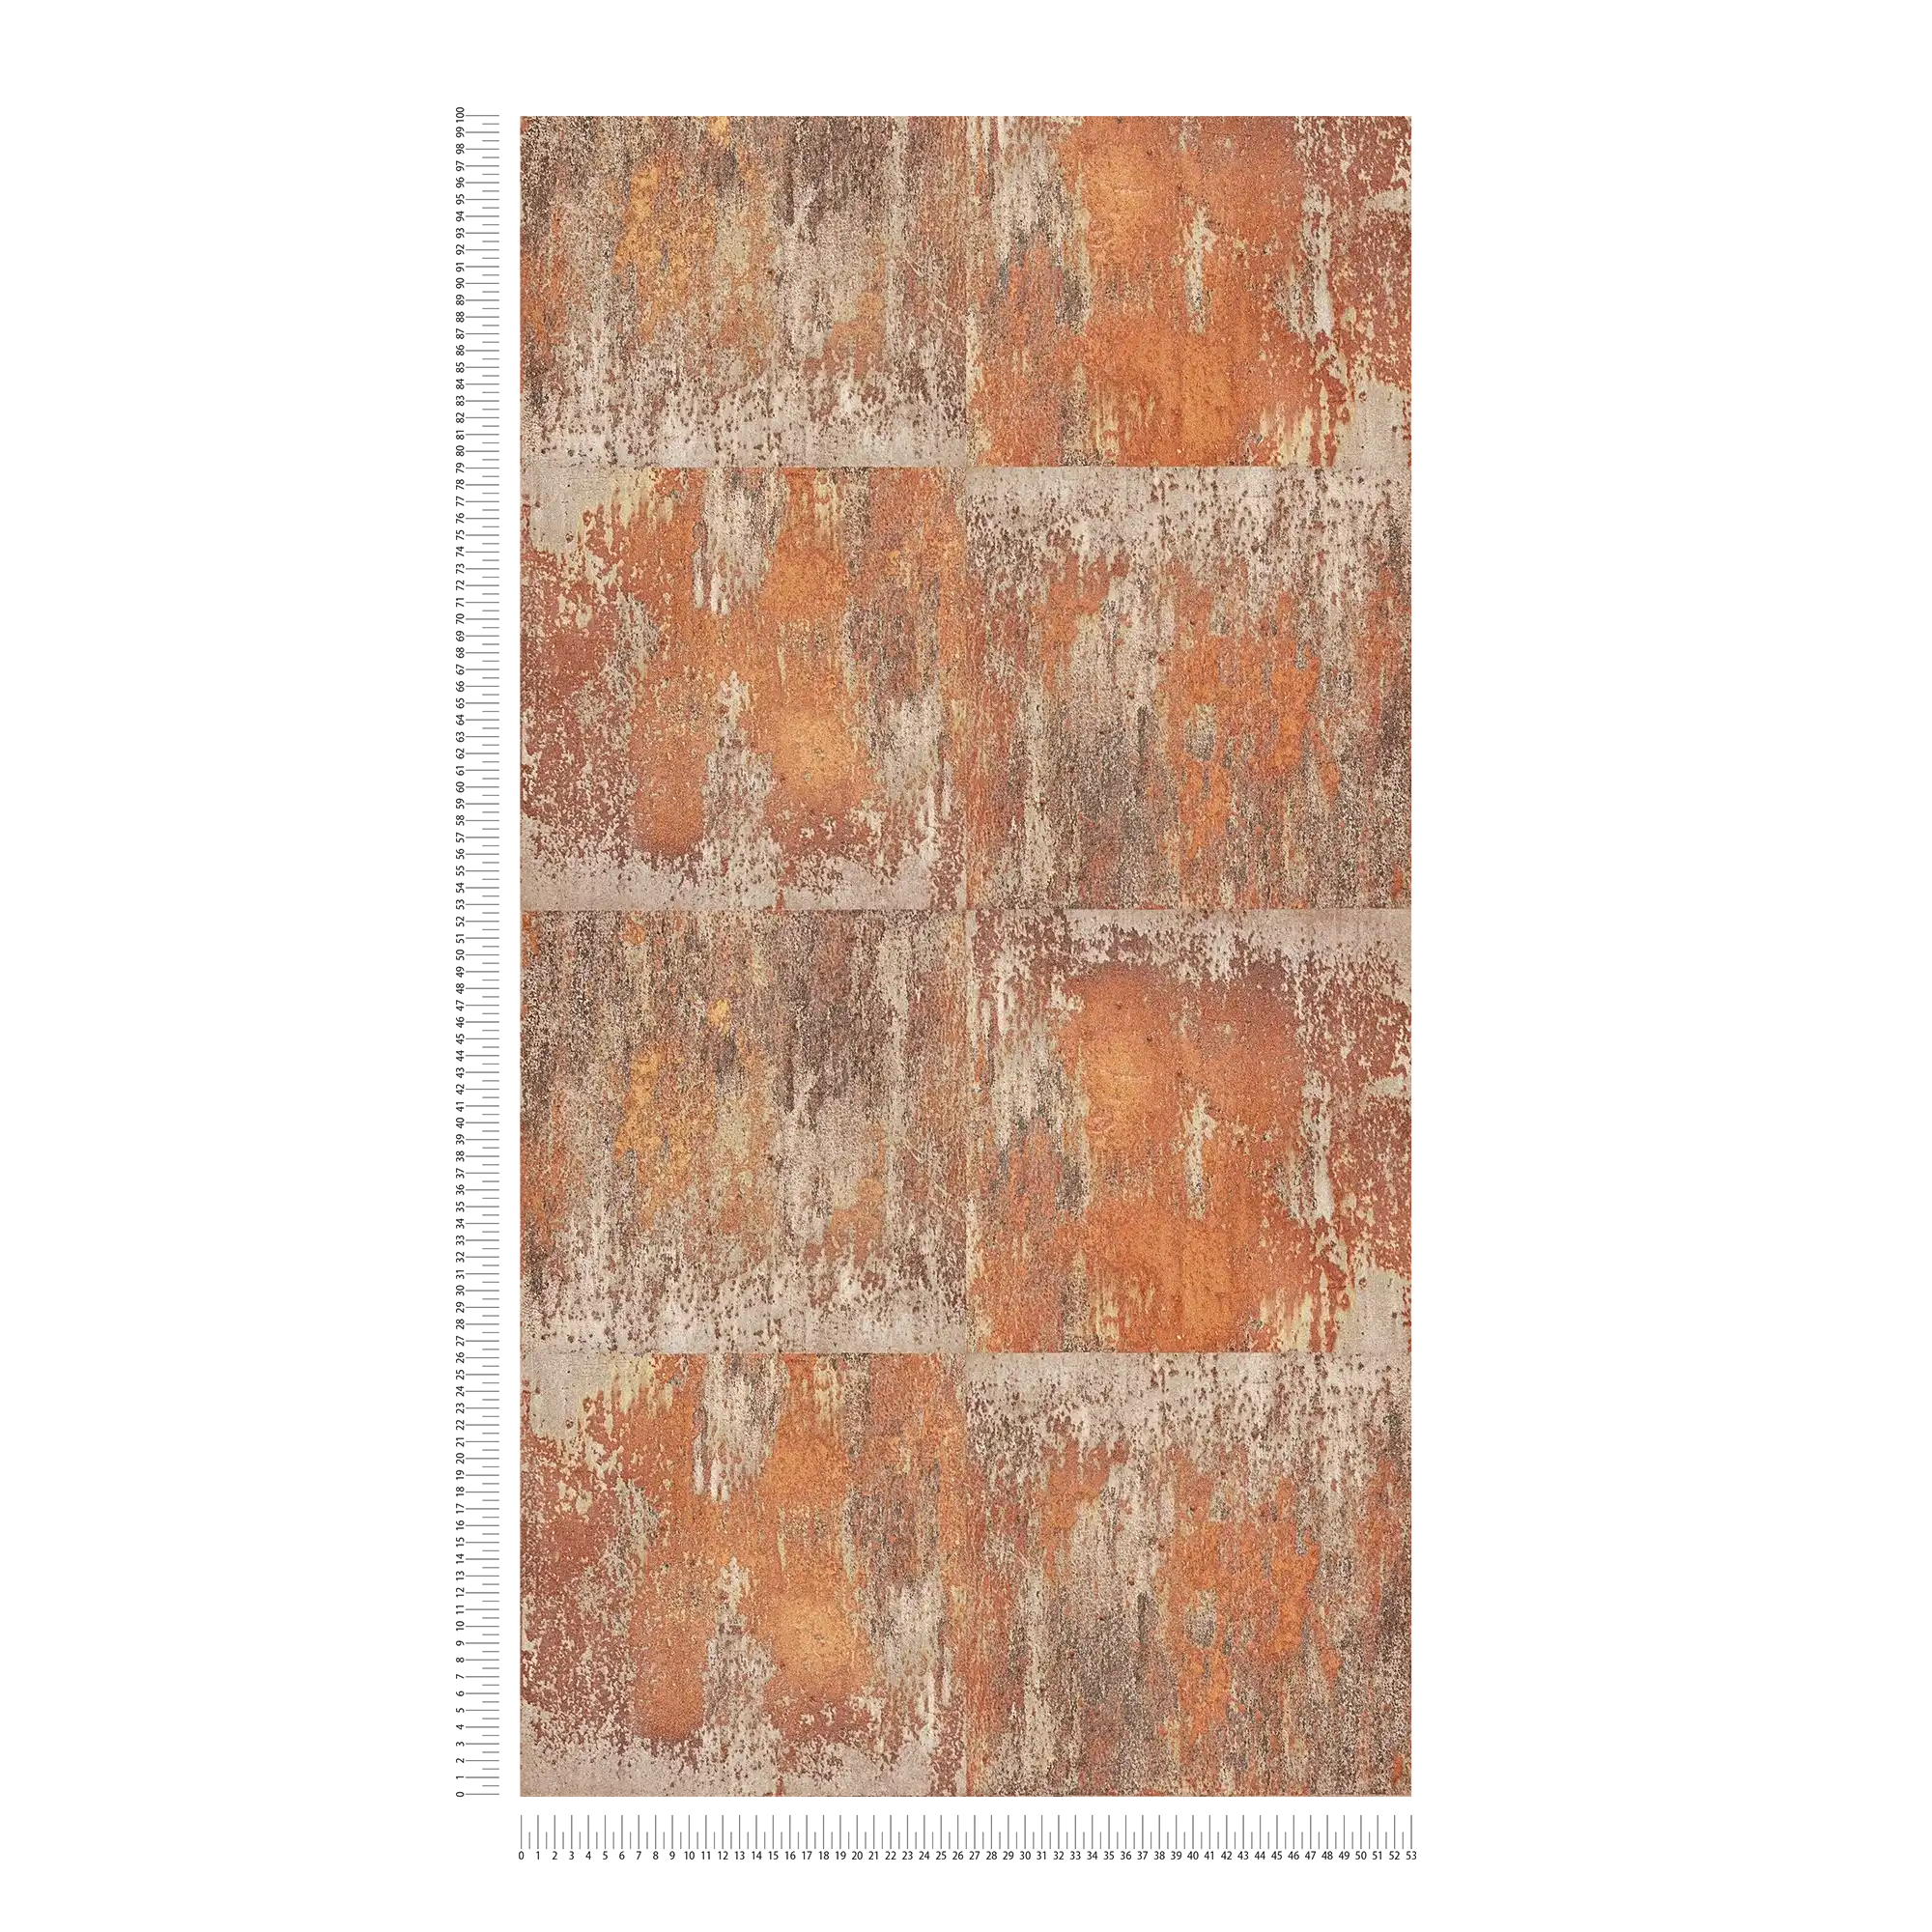             Papel pintado no tejido de diseño patinado con efectos de óxido y cobre - naranja, marrón, cobre
        